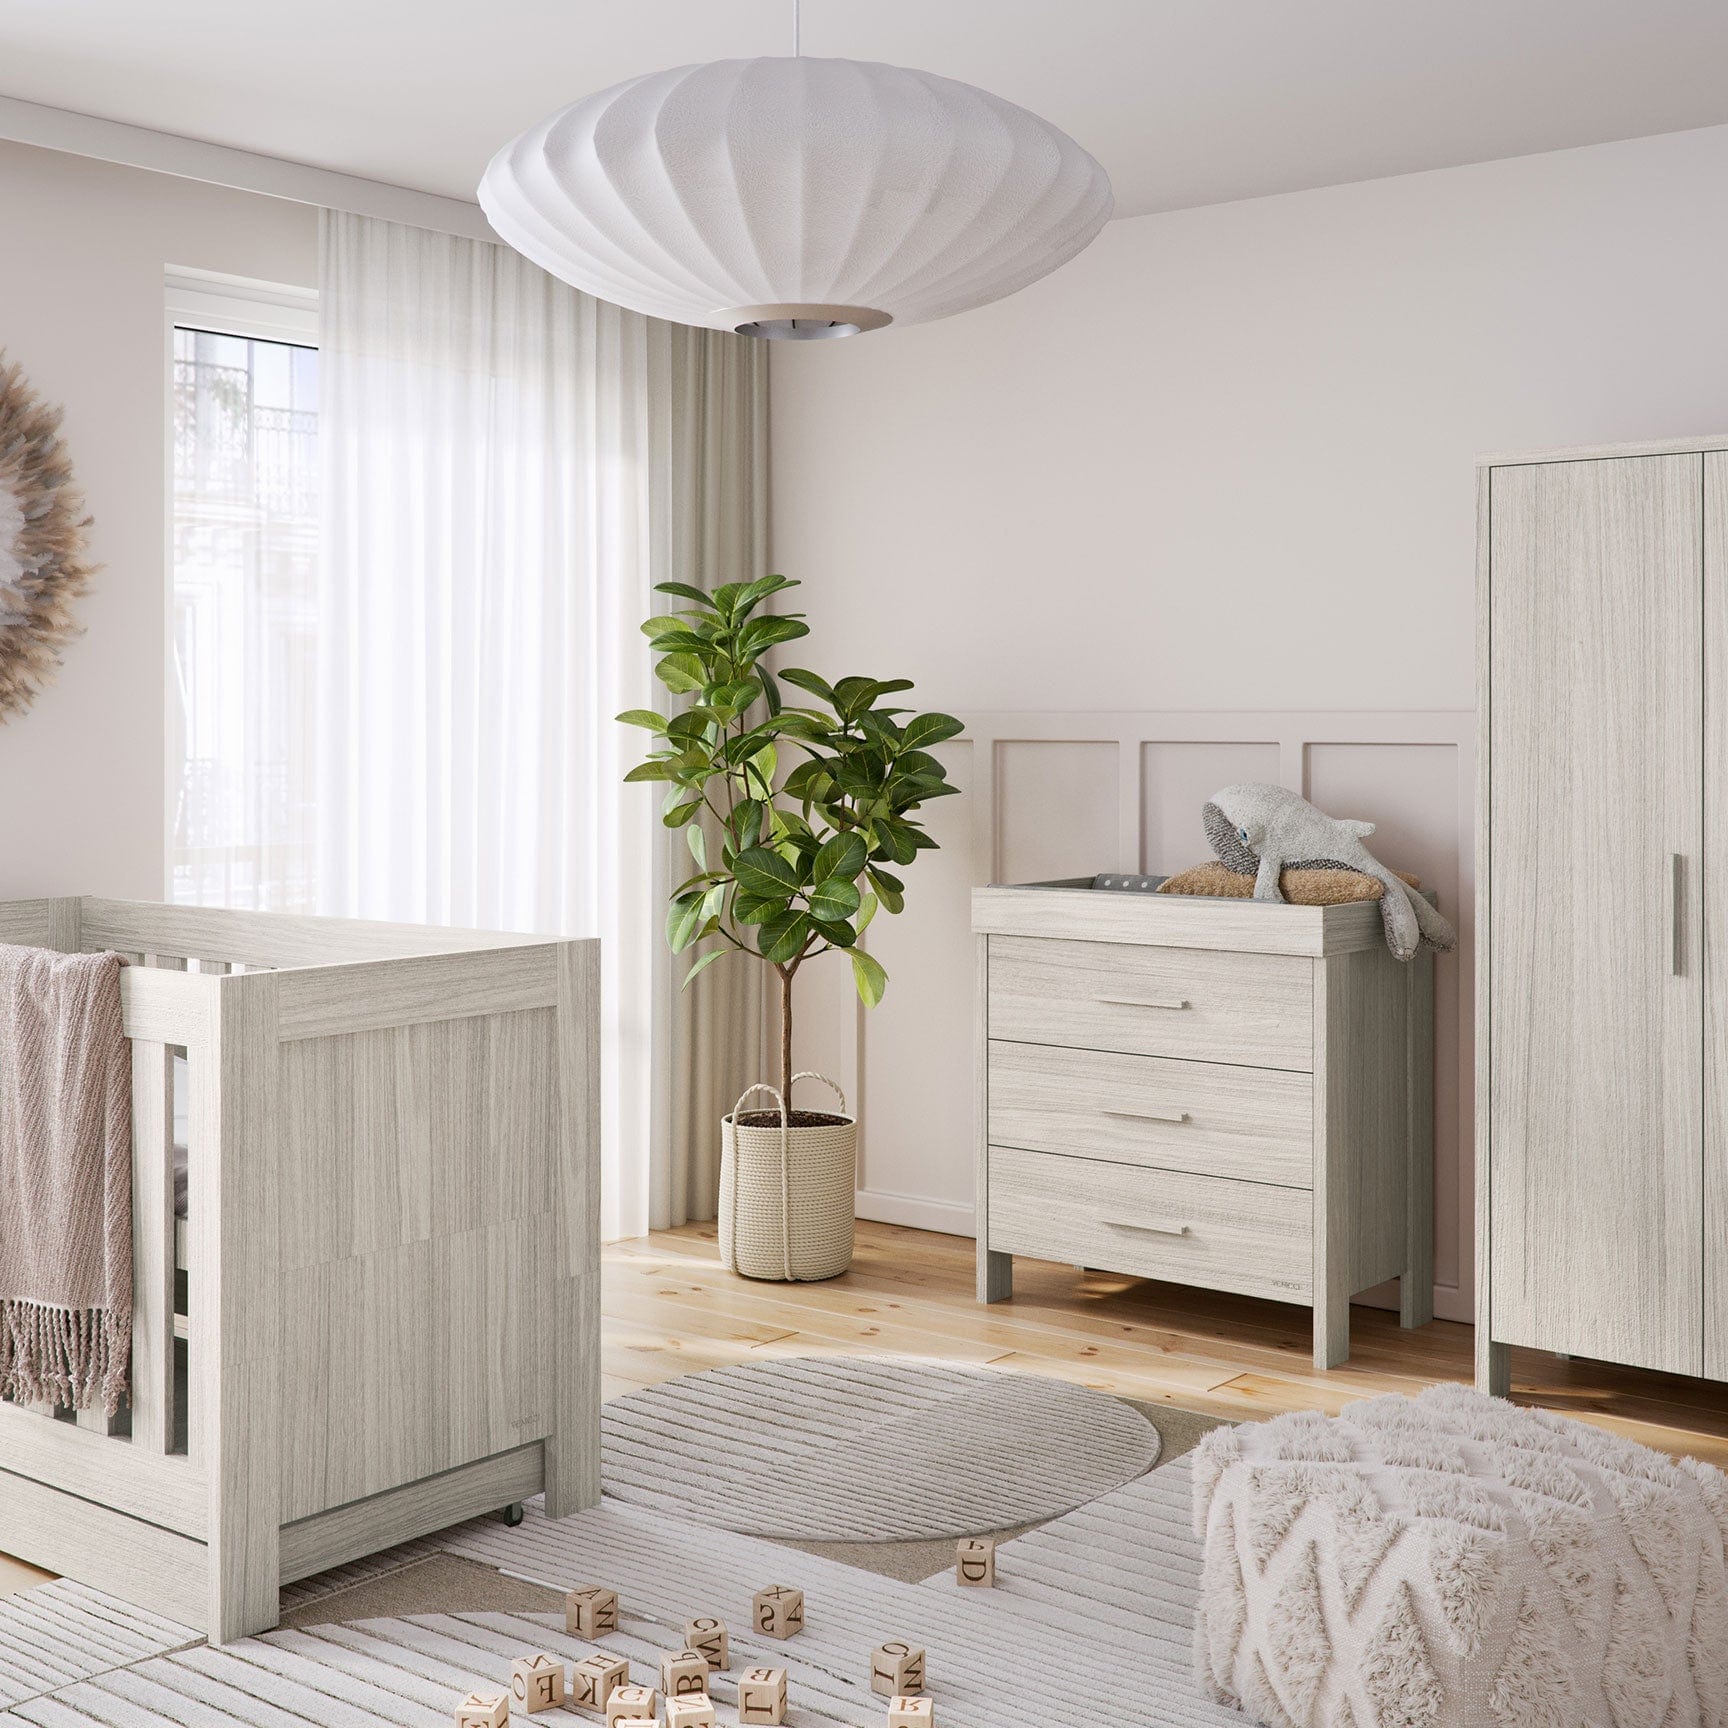 Venicci Nursery Room Sets Venicci Forenzo 3 Piece Roomset in Nordic White